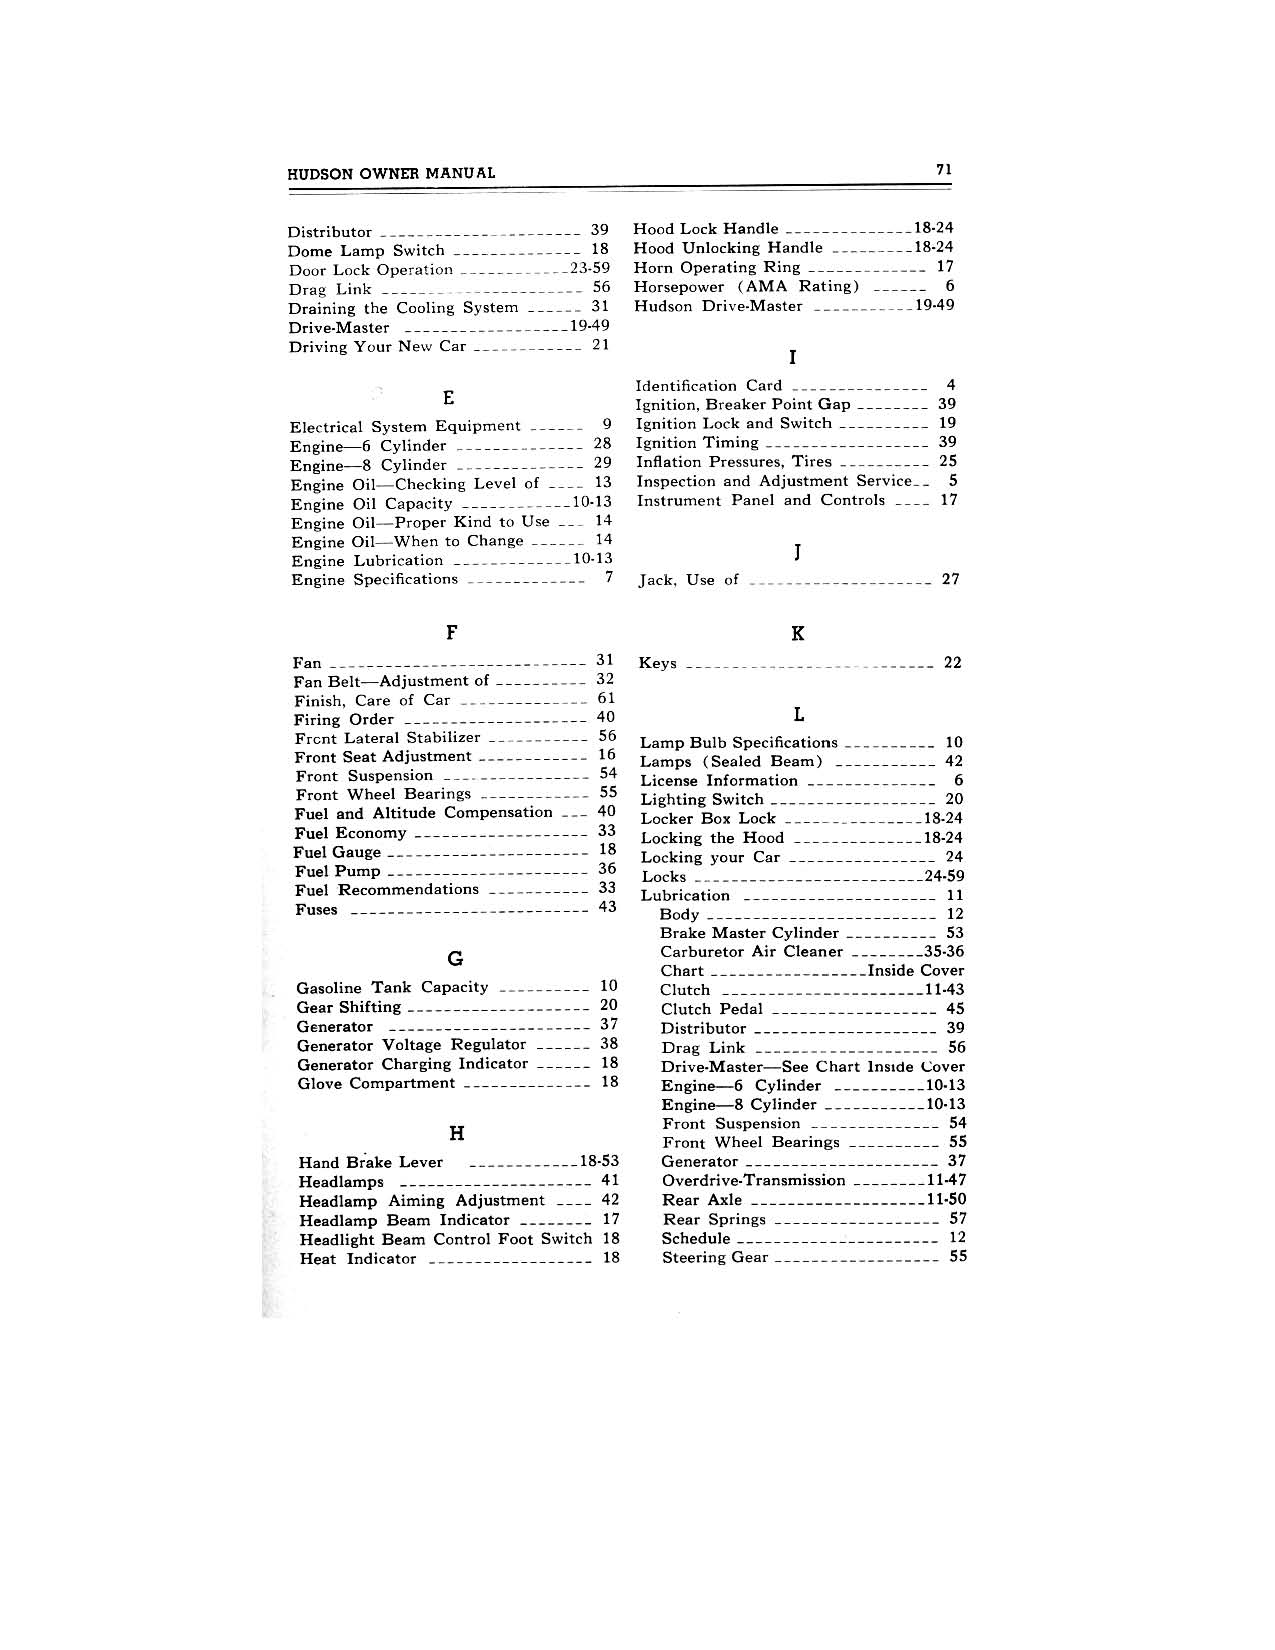 1949 Hudson Owners Manual-73